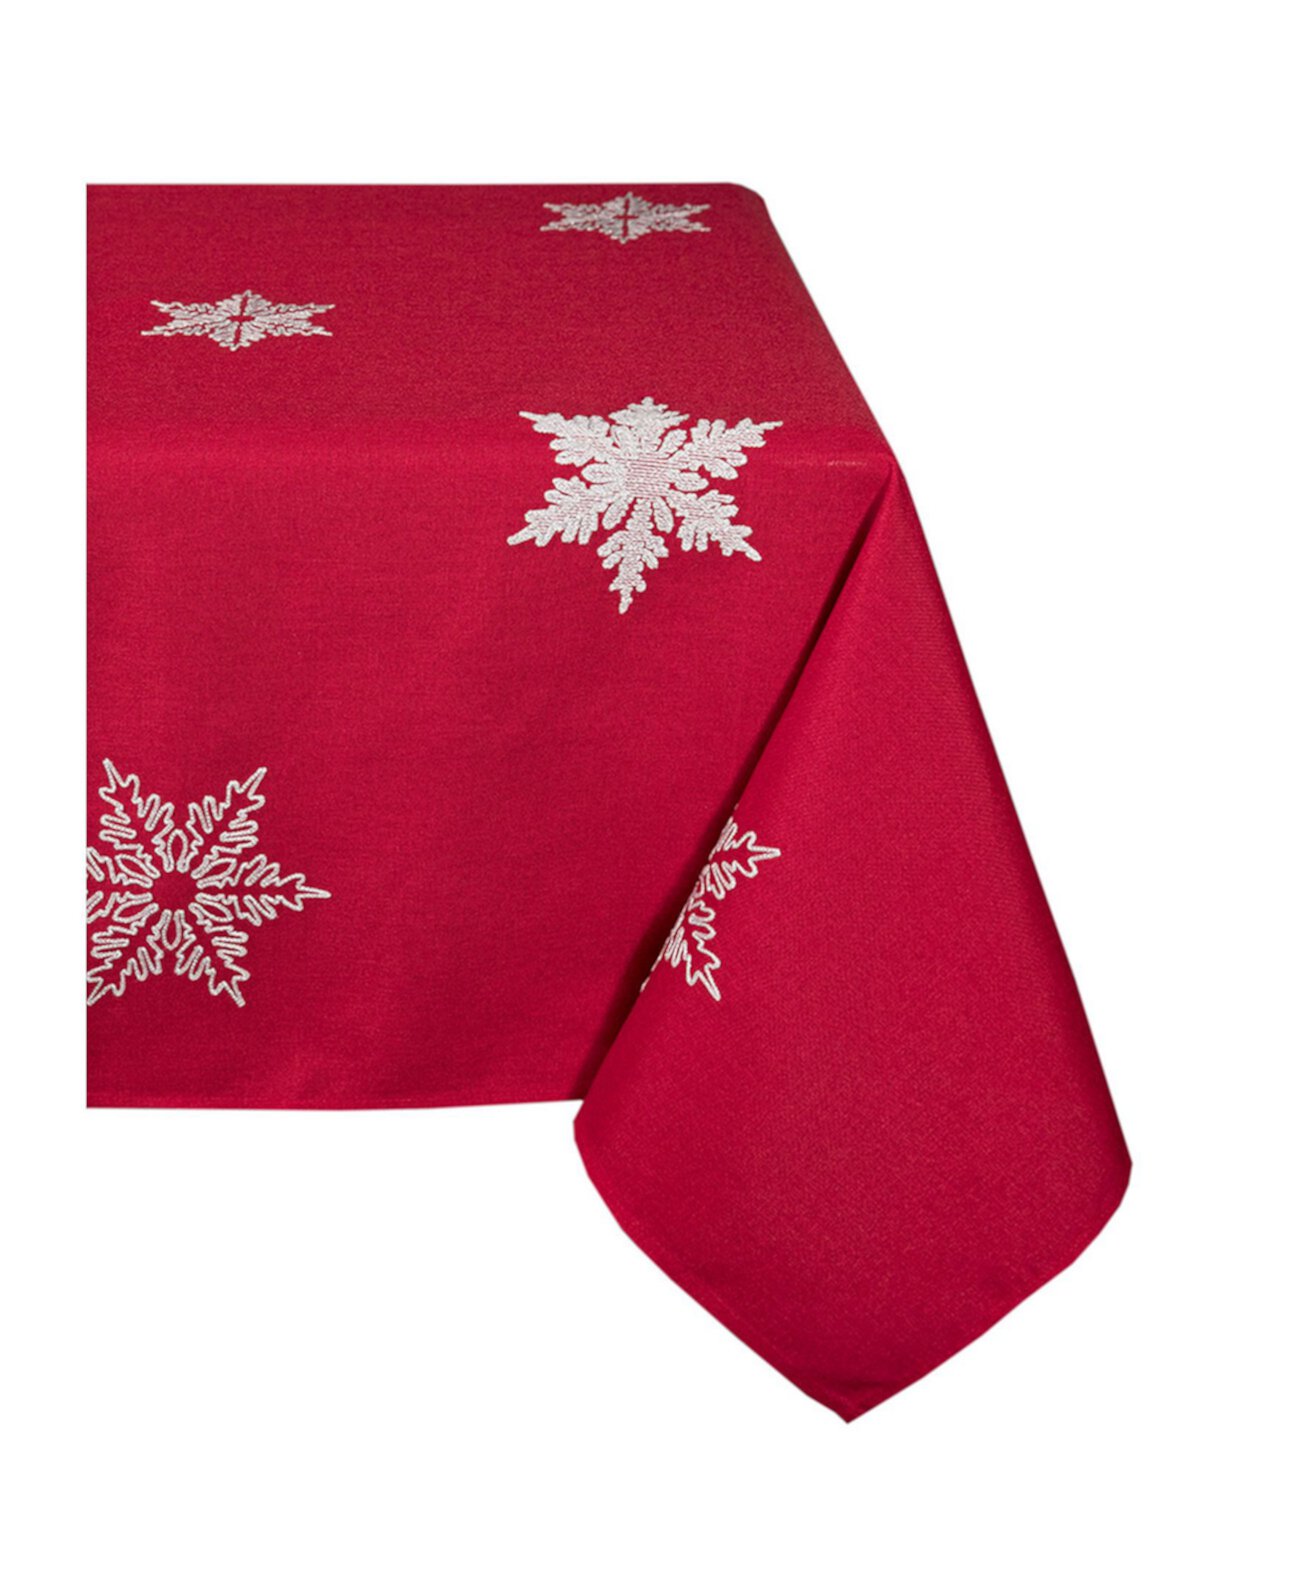 Рождественская скатерть с вышивкой "Снежинка", 60 "x 84" Xia Home Fashions